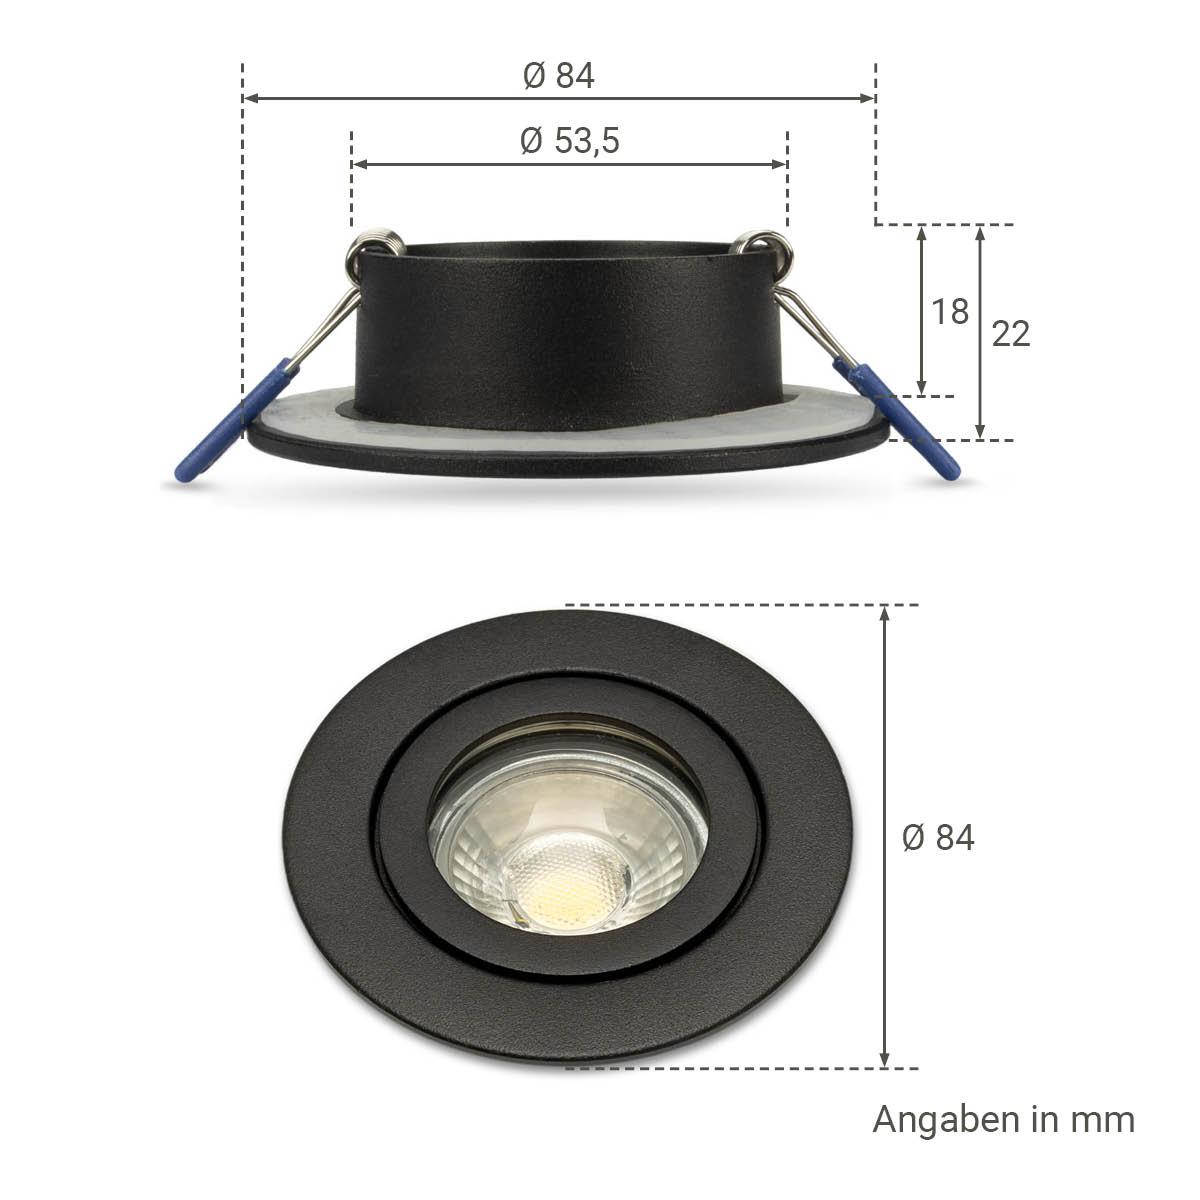 Einbauspot IP44 rund - Farbe: schwarz - LED Leuchtmittel:  GU10 5W warmweiß